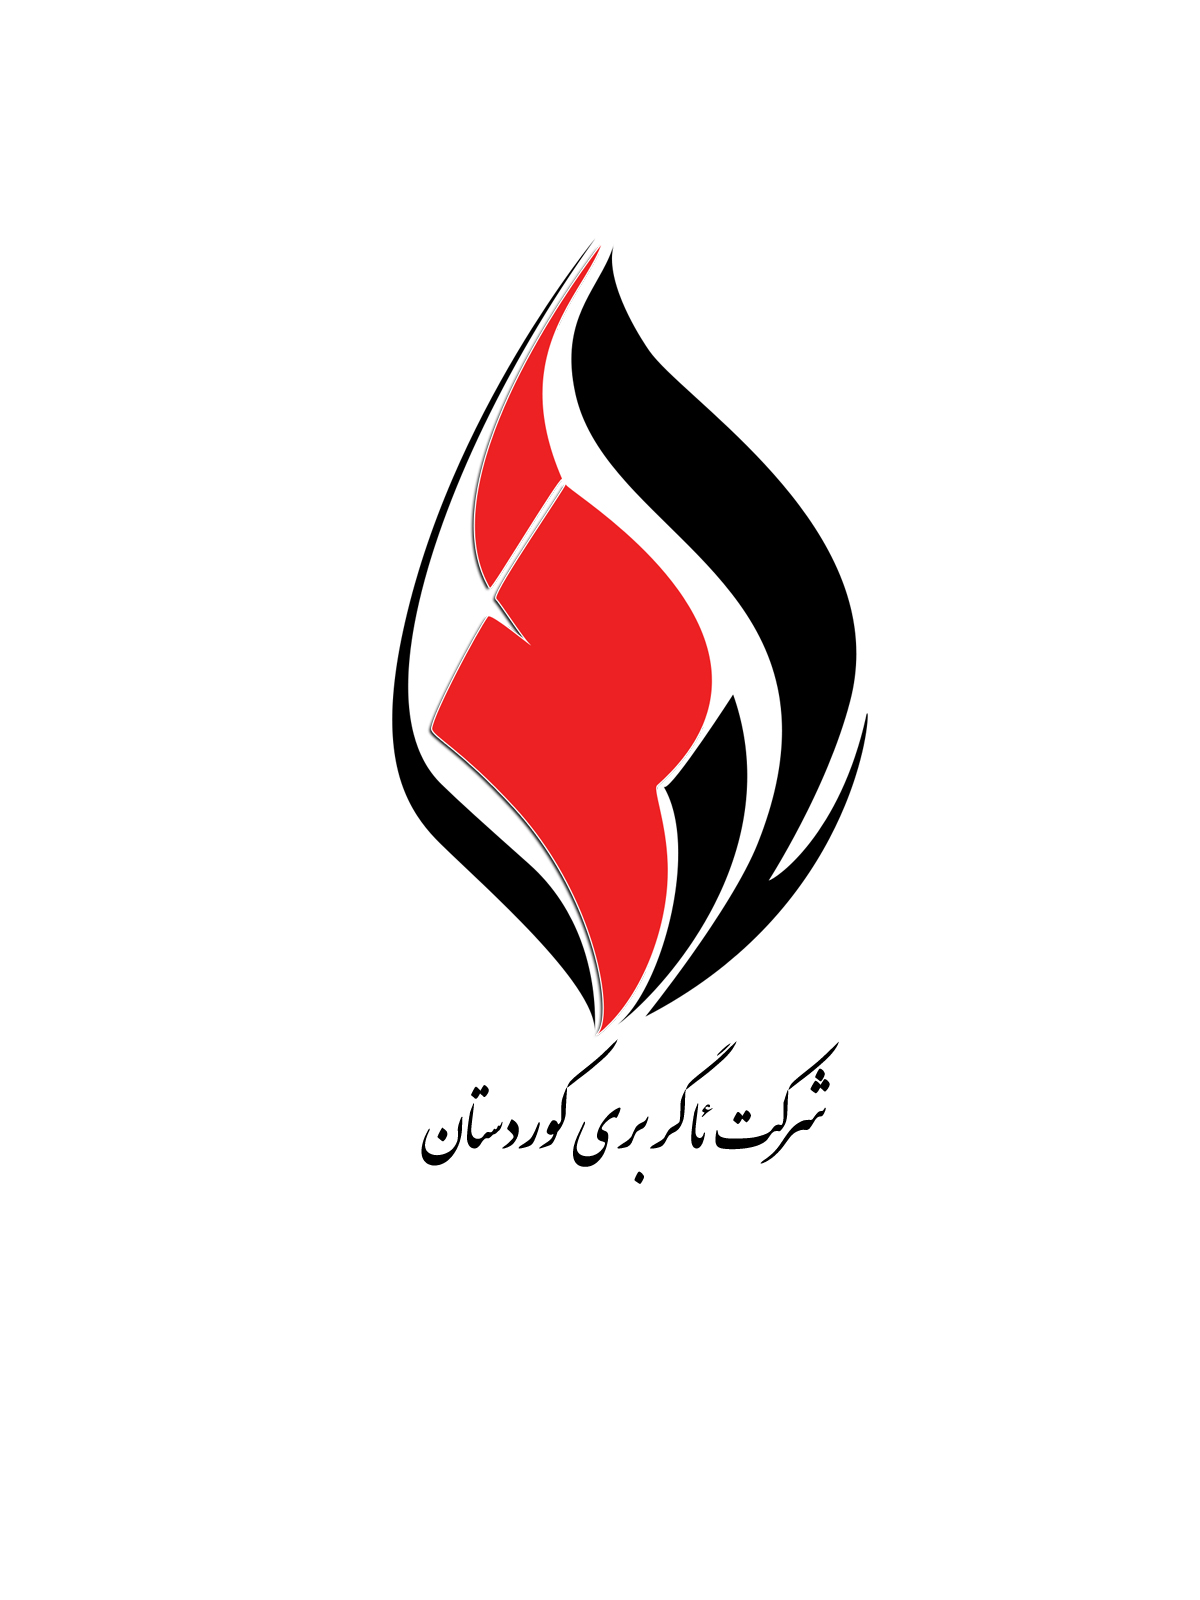 صنایع ایمنی وآتش نشانی ئاگربری کوردستان